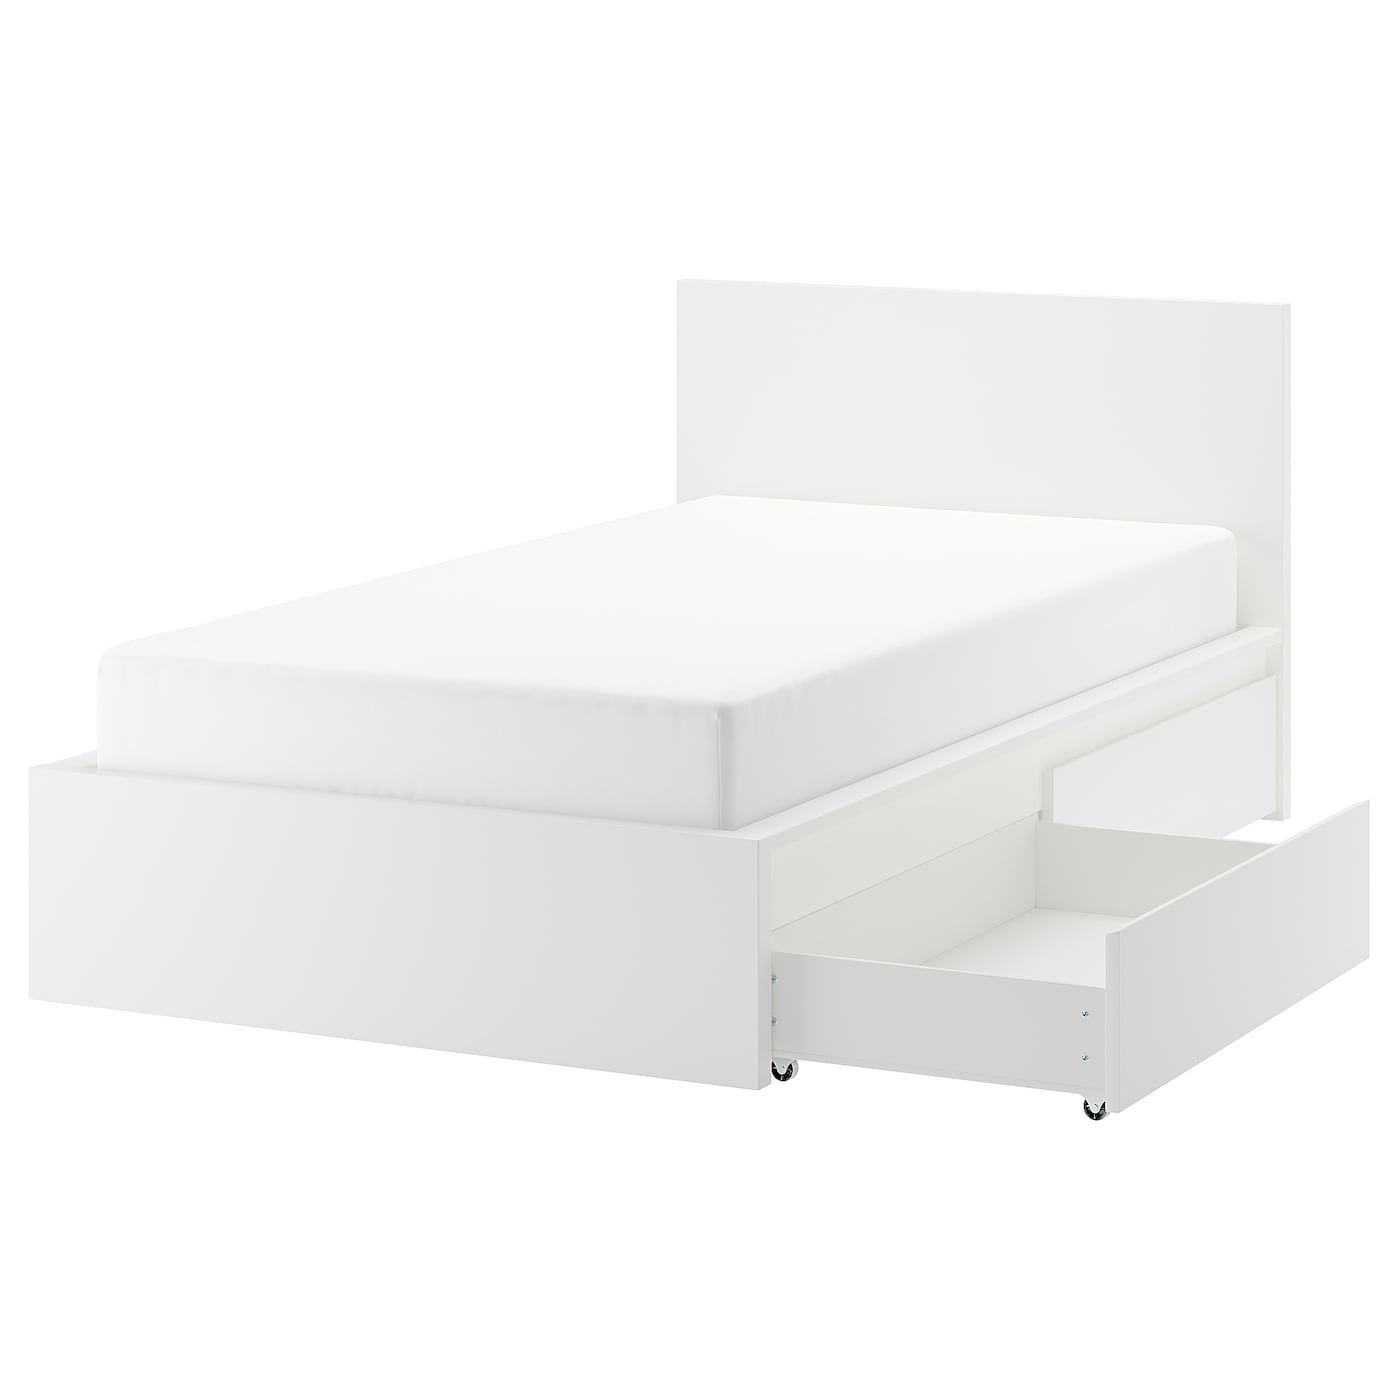 Каркас кровати с 2 ящиками для хранения - IKEA MALM, 200х120 см, белый, МАЛЬМ ИКЕА